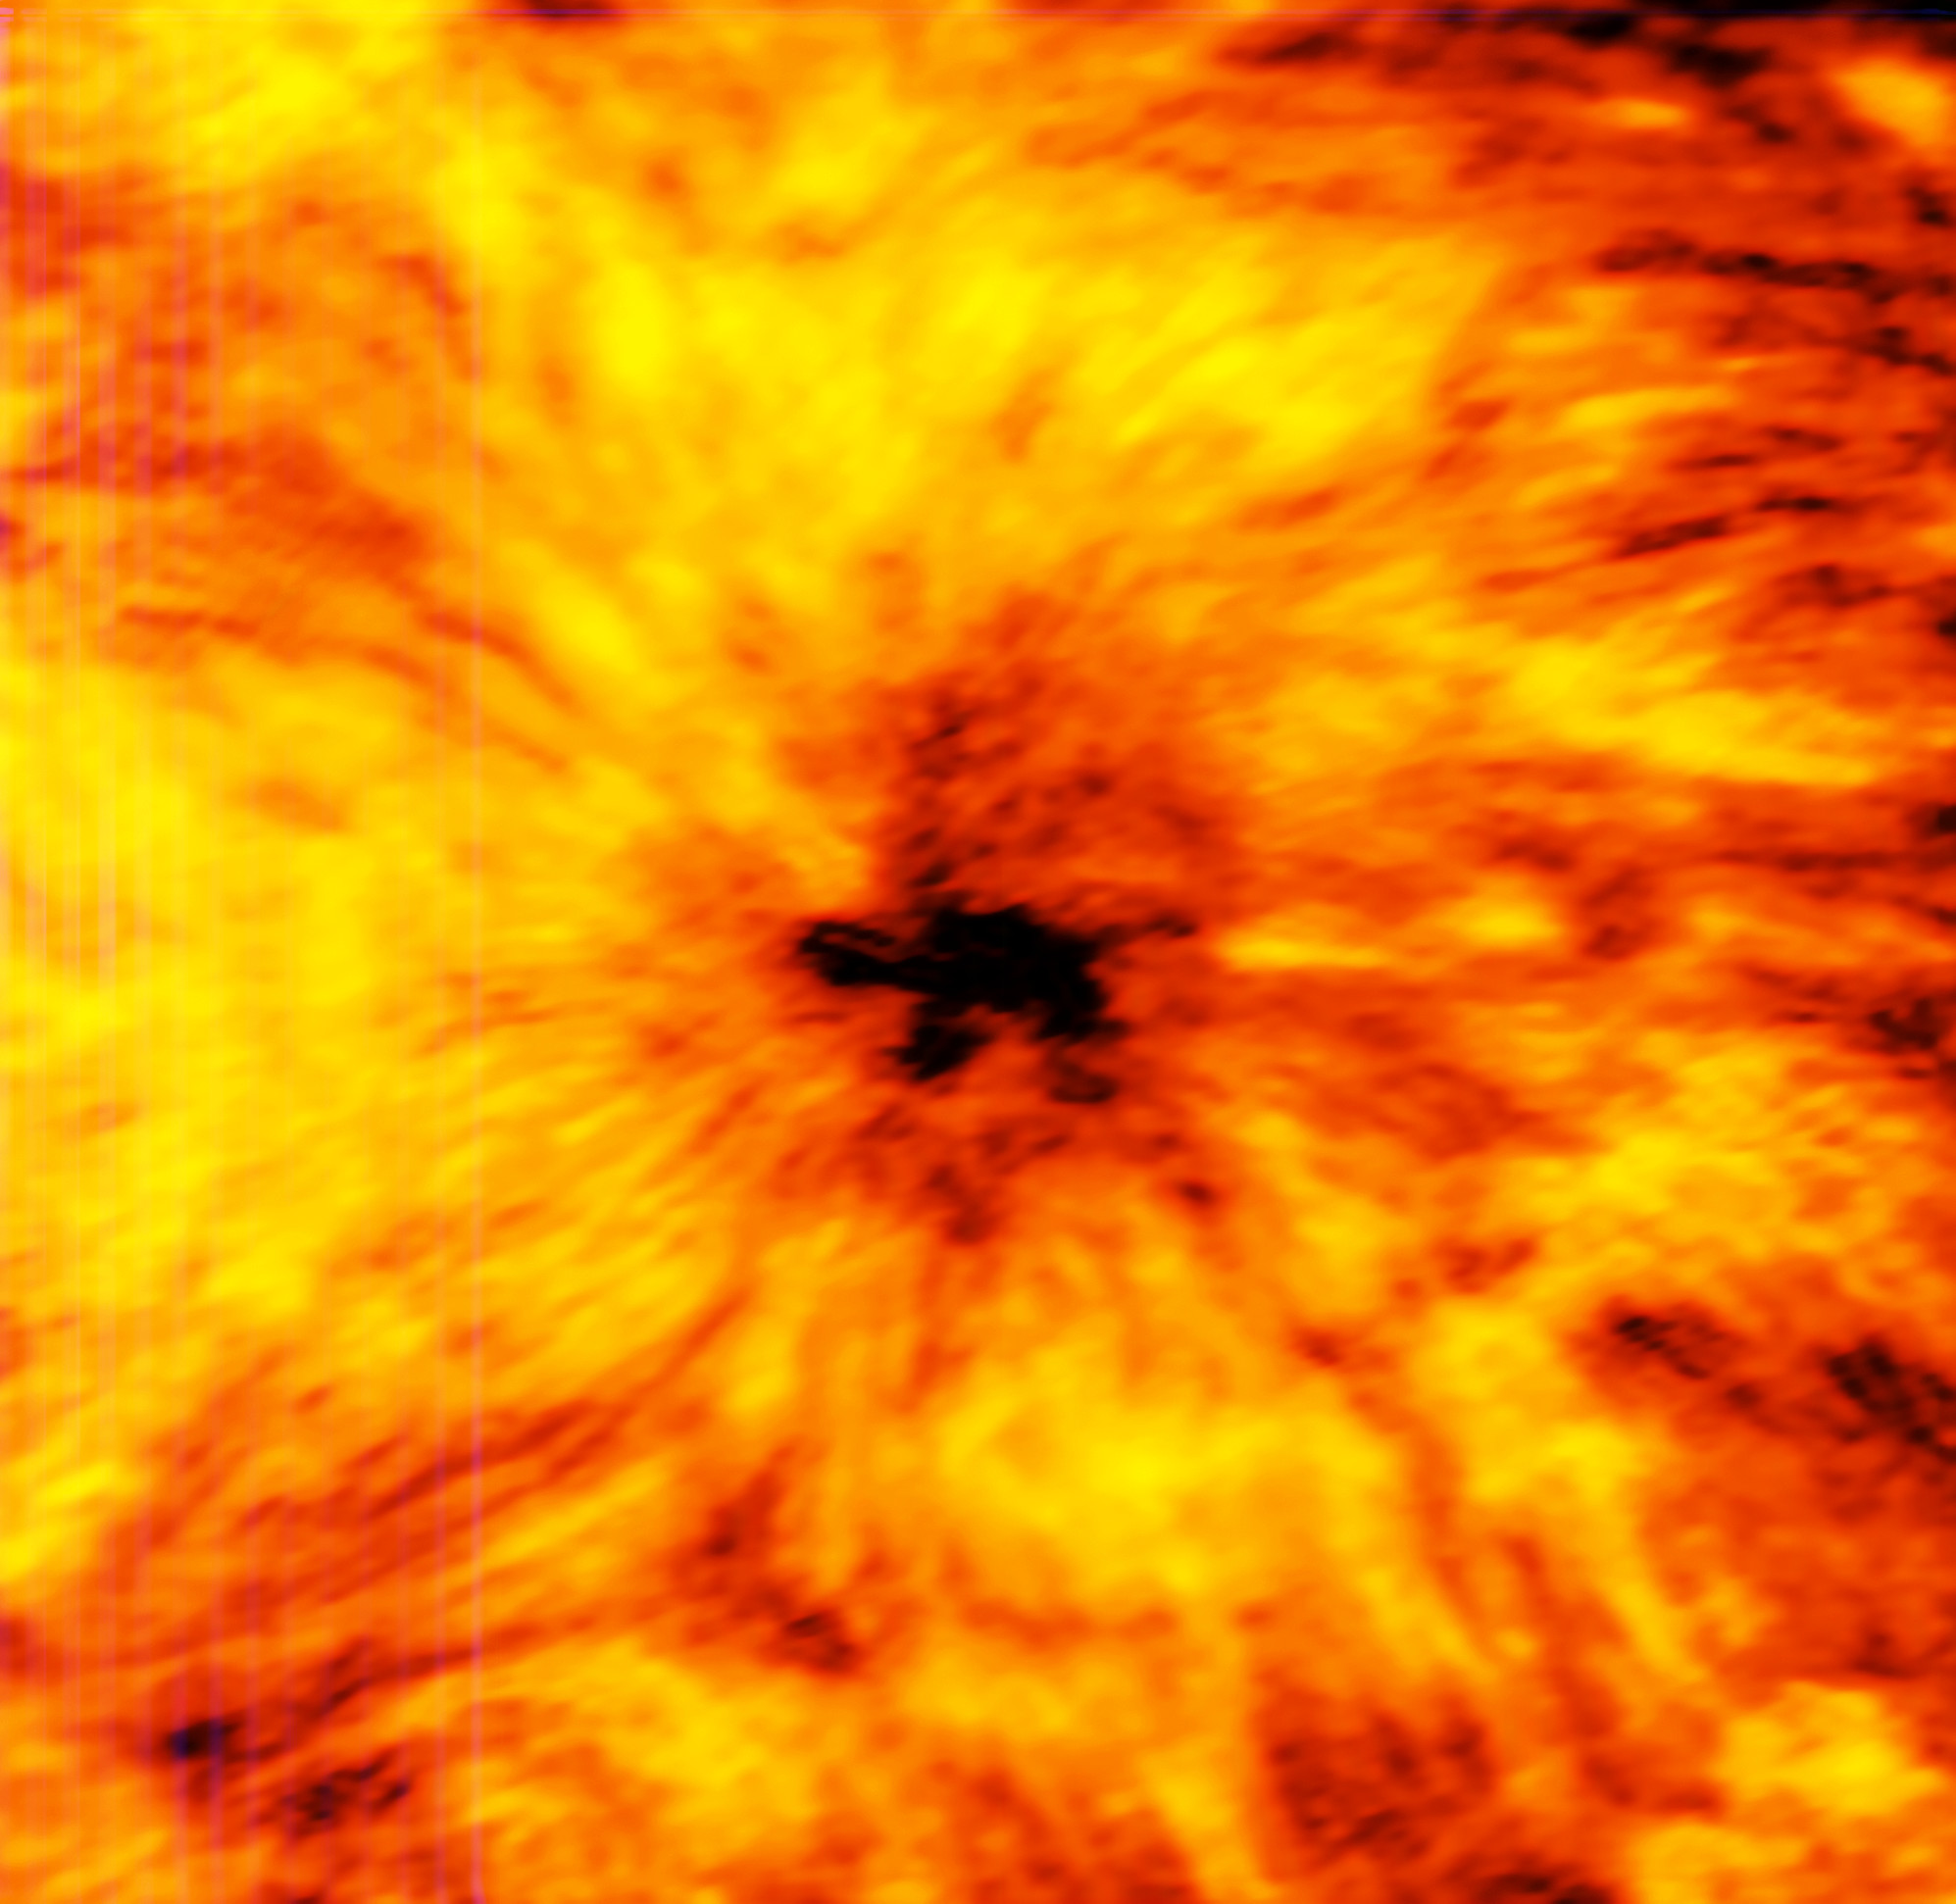 magen de ALMA de una enorme mancha solar. Foto:ALMA (ESO/NAOJ/NRAO)